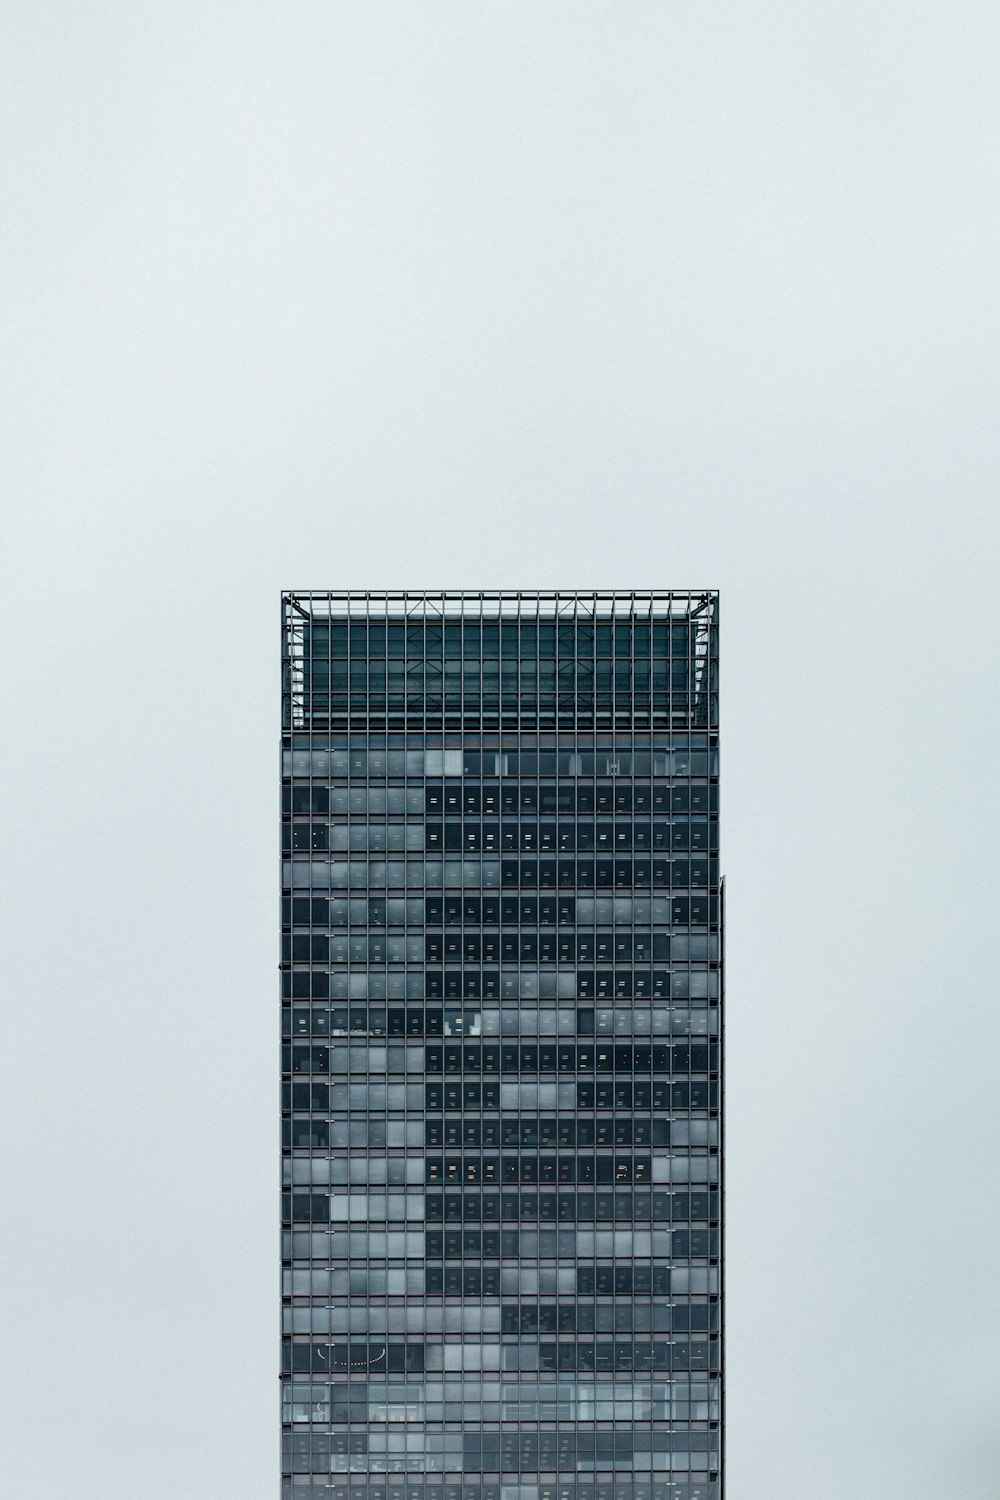 grattacieli in bianco e nero